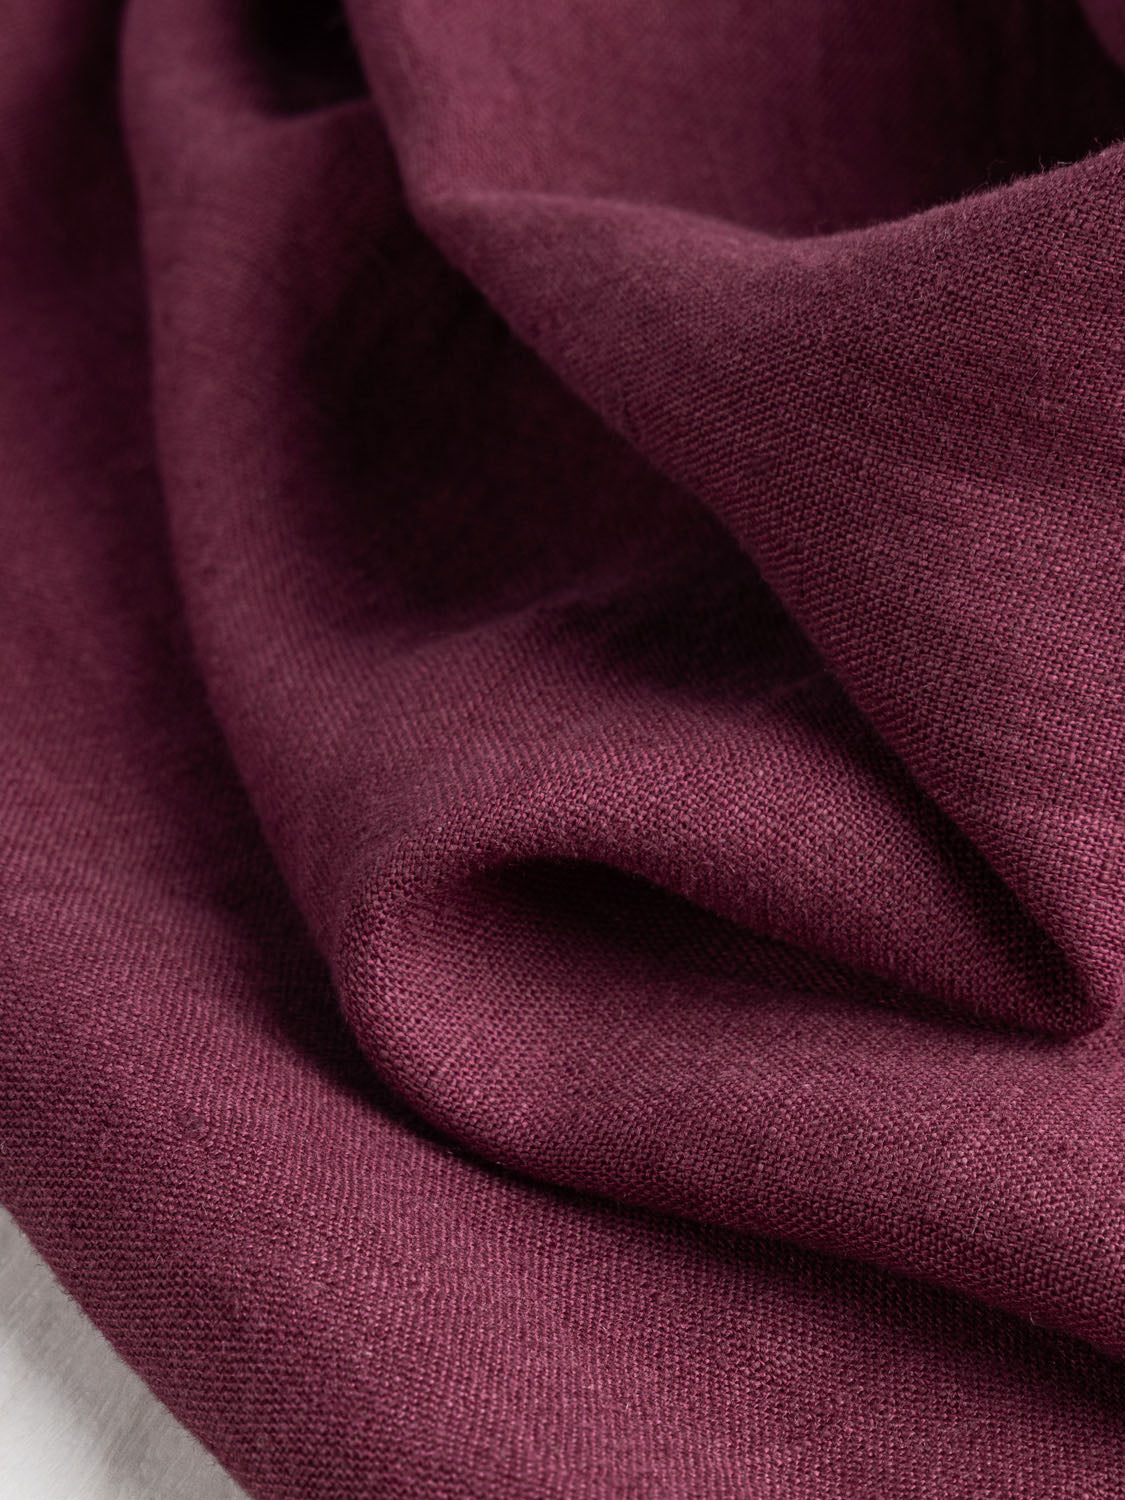 Midweight Linen - Burgundy | Core Fabrics